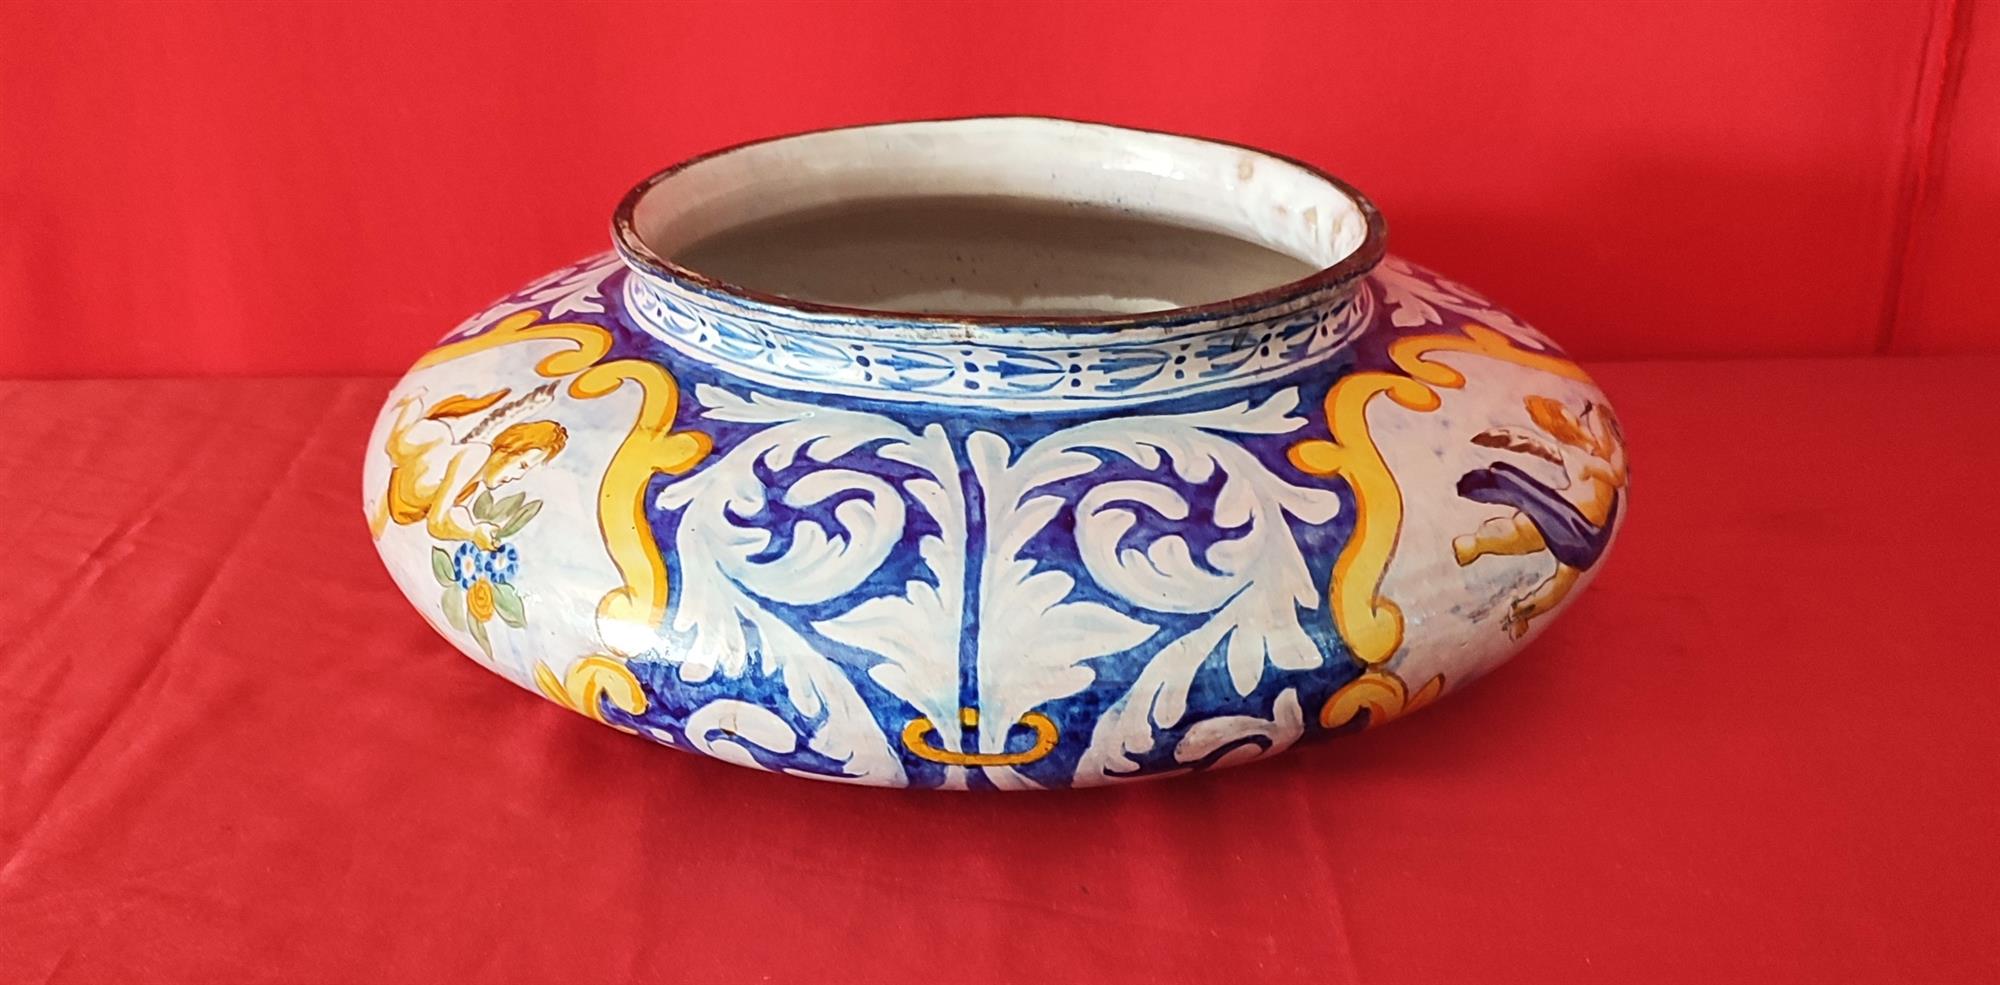 Hand-painted majolica cachepot